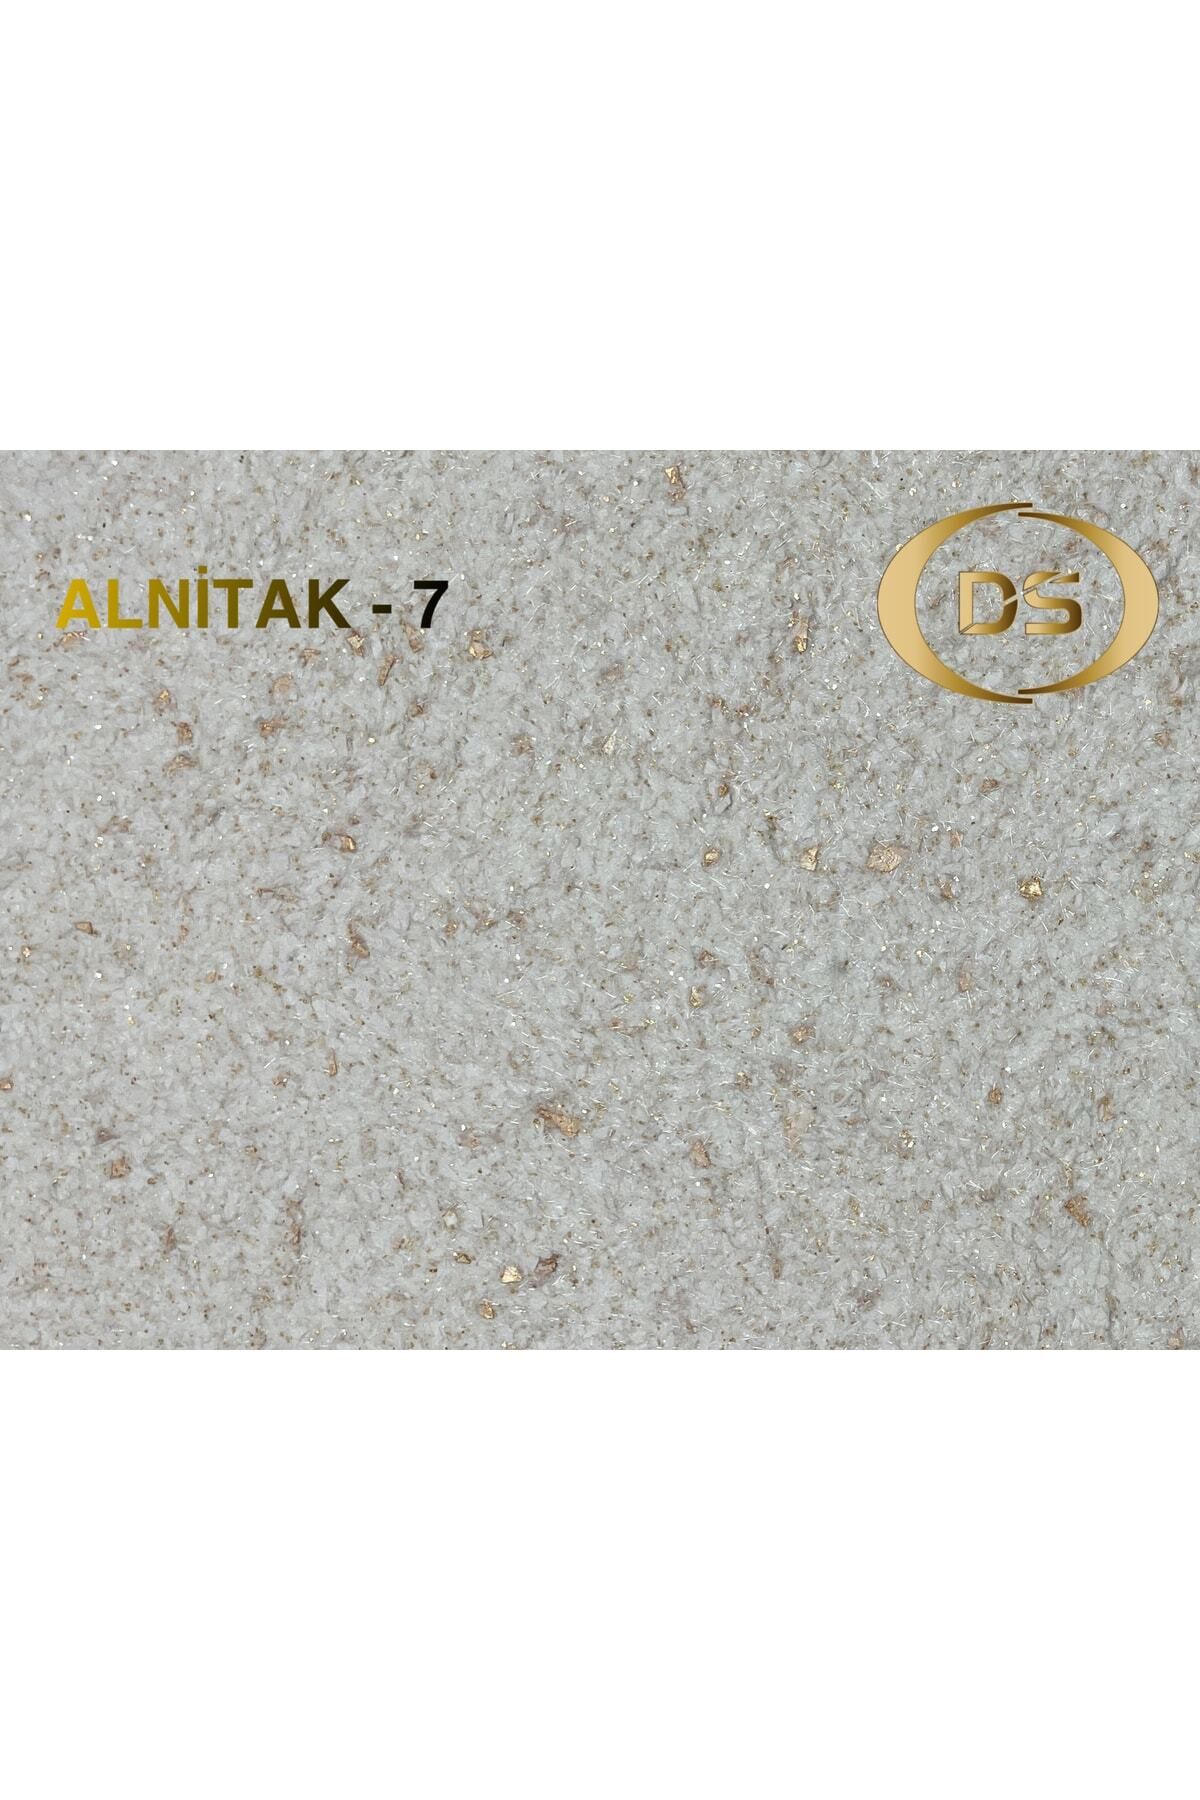 DURAKS Alnitak - 7 | Ipek Sıva & Canlı Sıva & Pamuk Sıva & Yalıtımlı Sıva